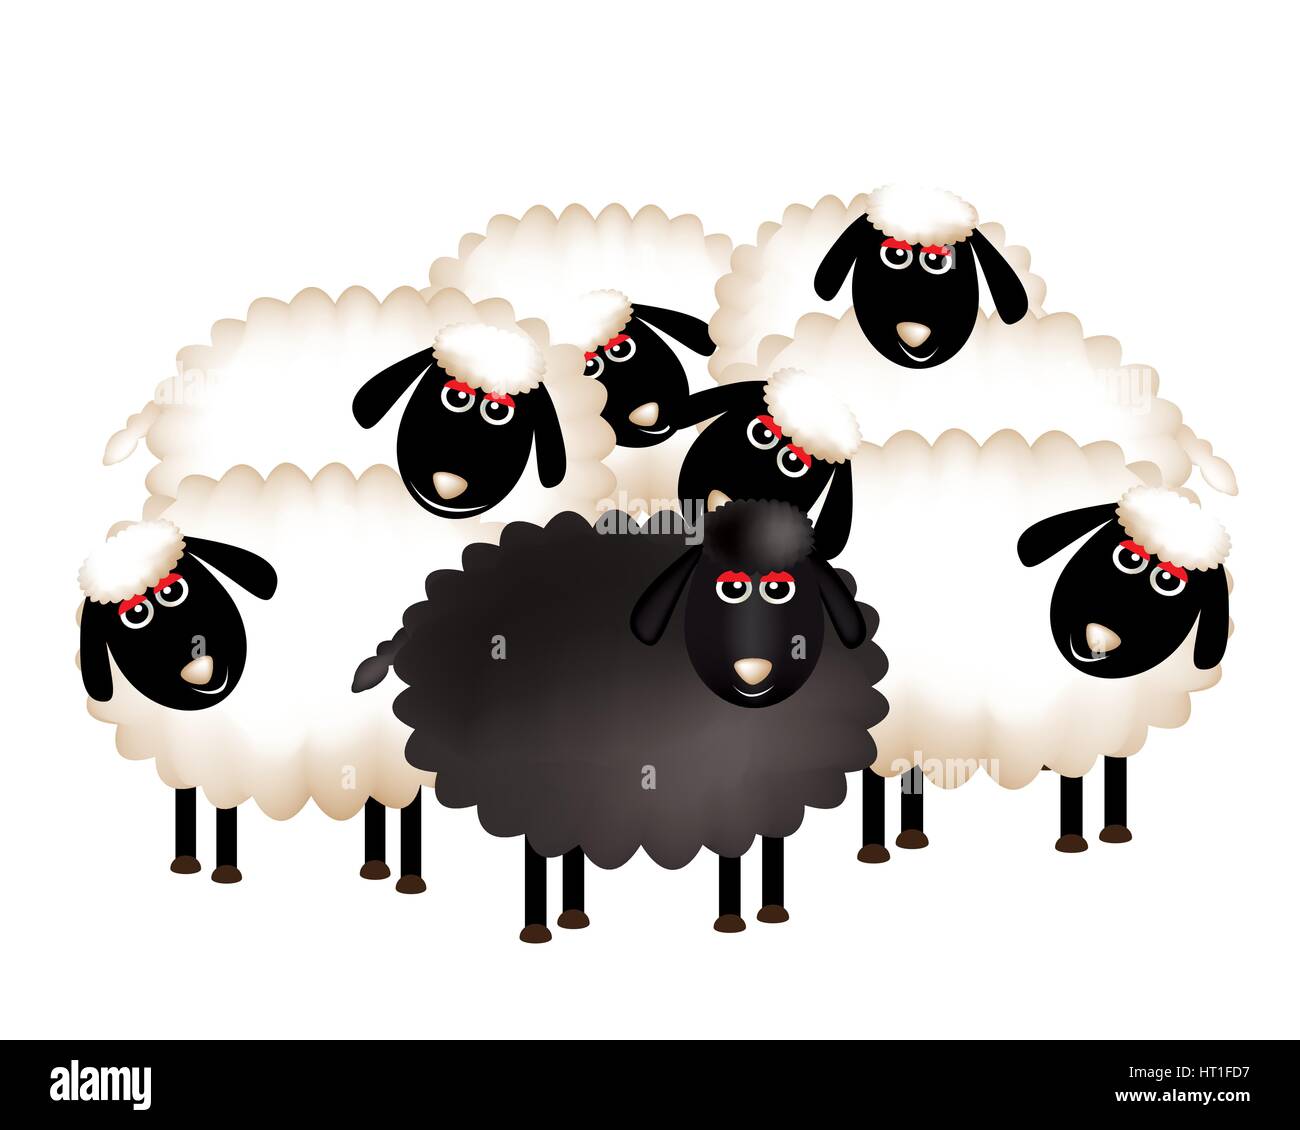 Портит стадо. Овечки черным цветом. Черная овца идиома. Чёрная овца в семье. Black Sheep идиома.